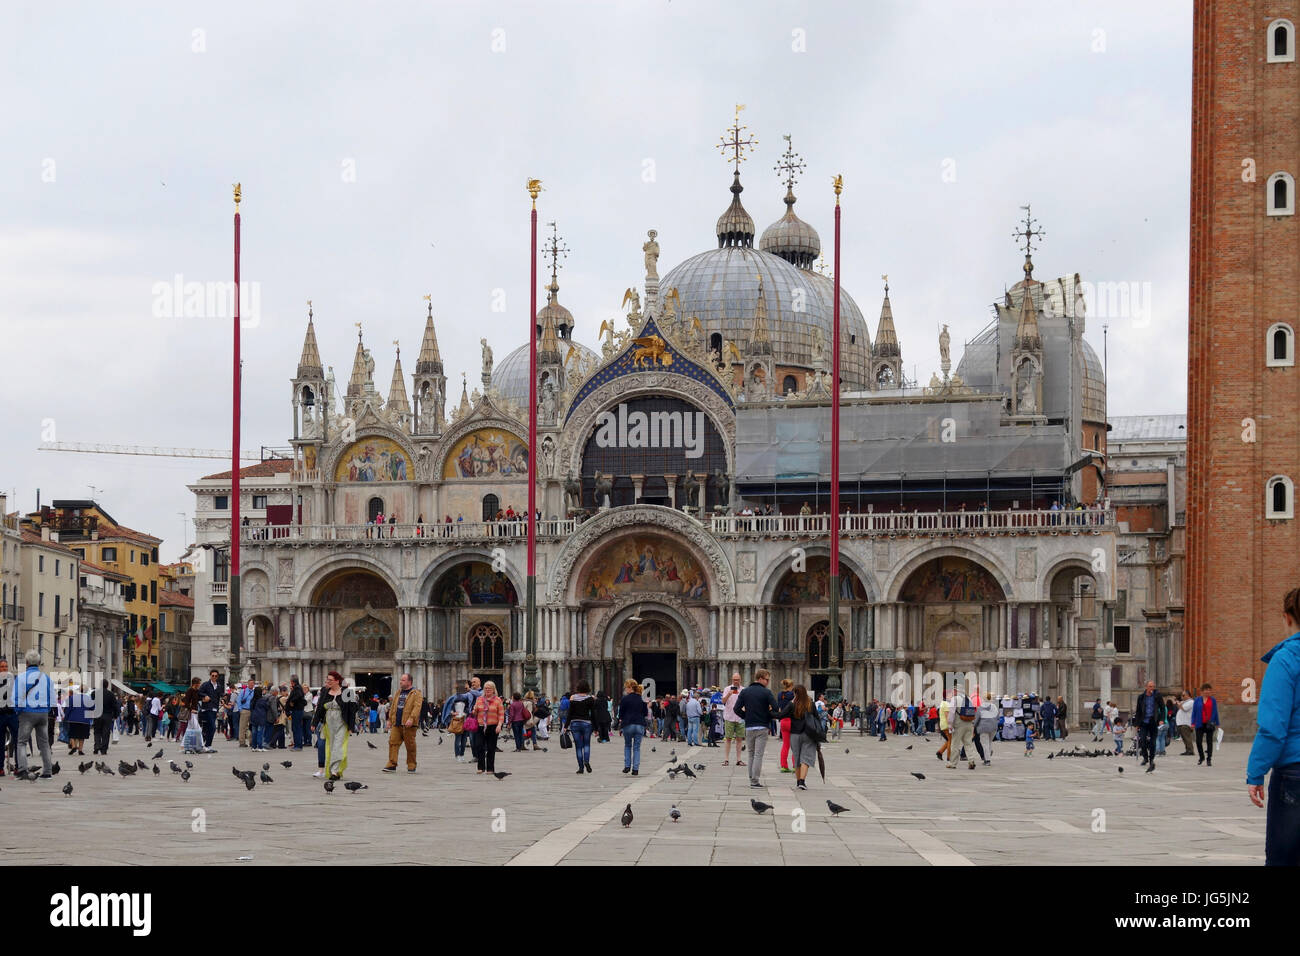 St. Mark's Basillica, Venice, Italy Stock Photo